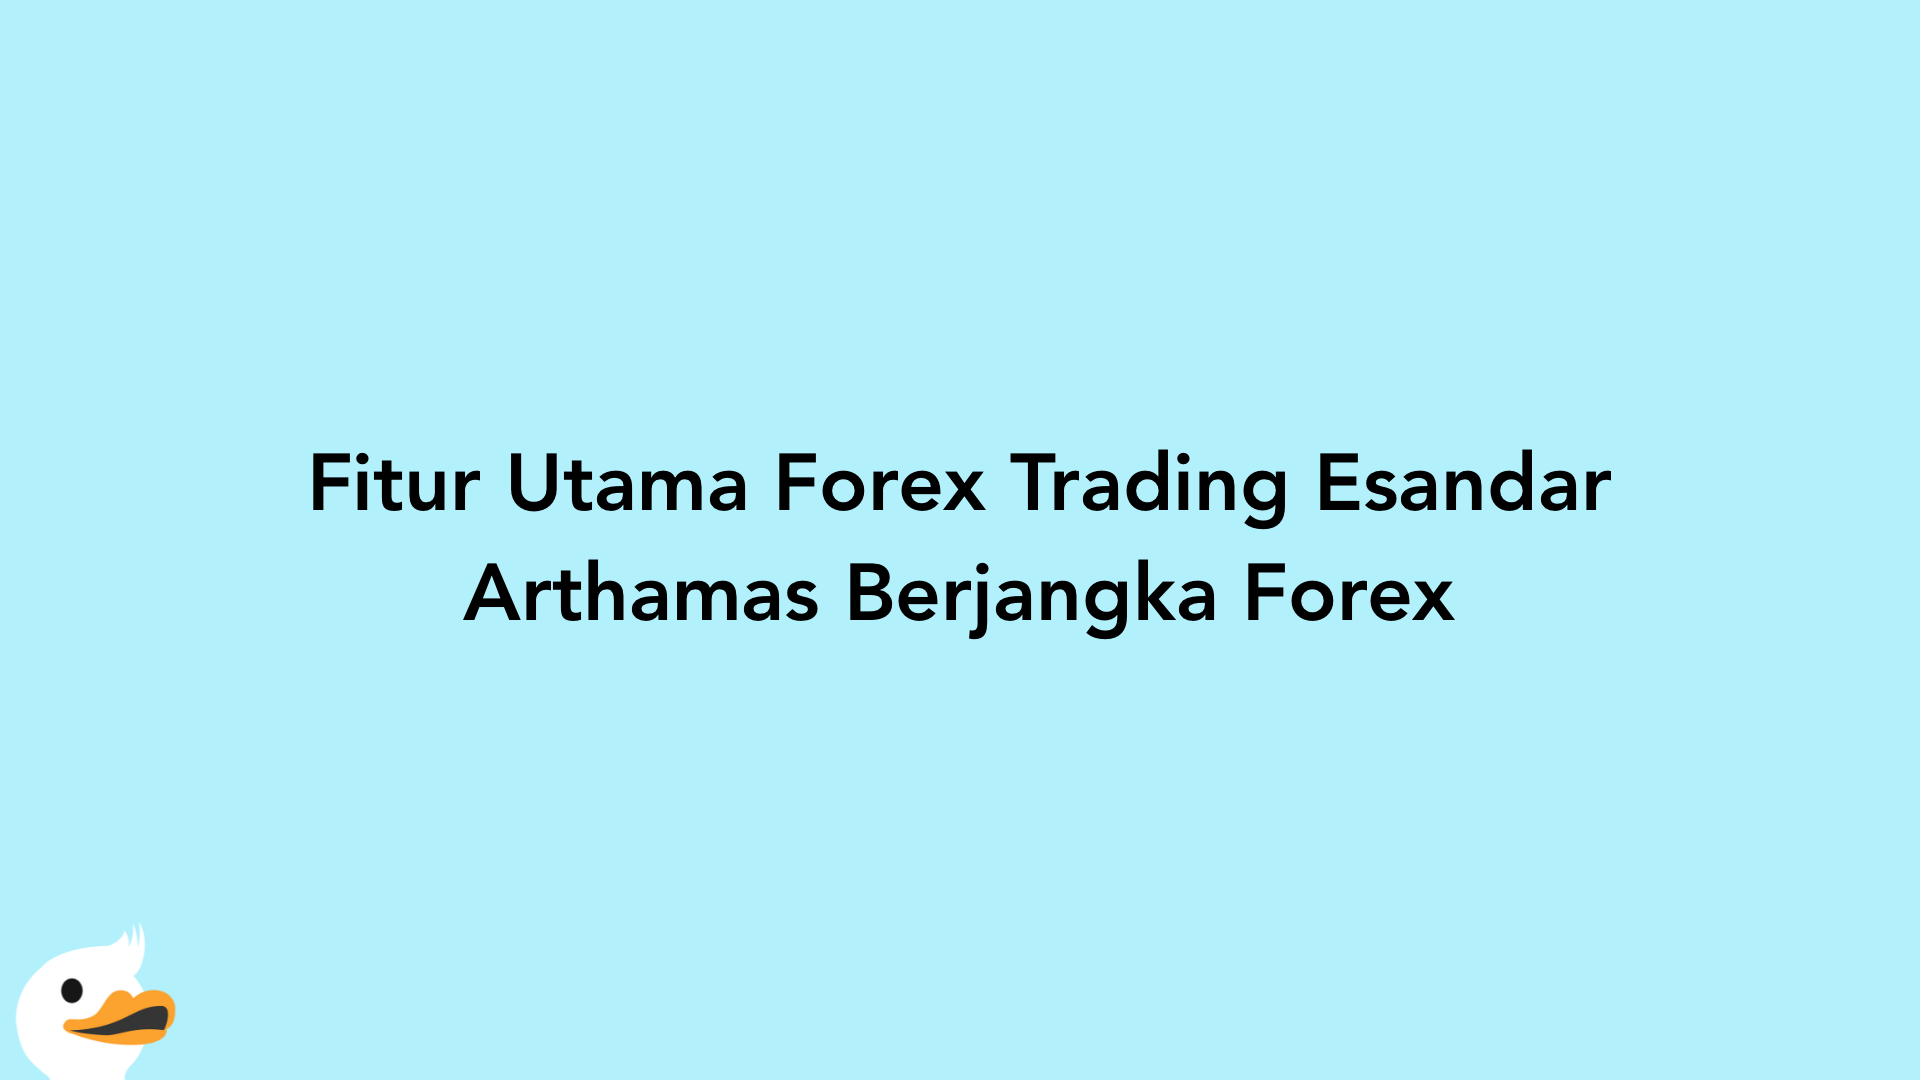 Fitur Utama Forex Trading Esandar Arthamas Berjangka Forex